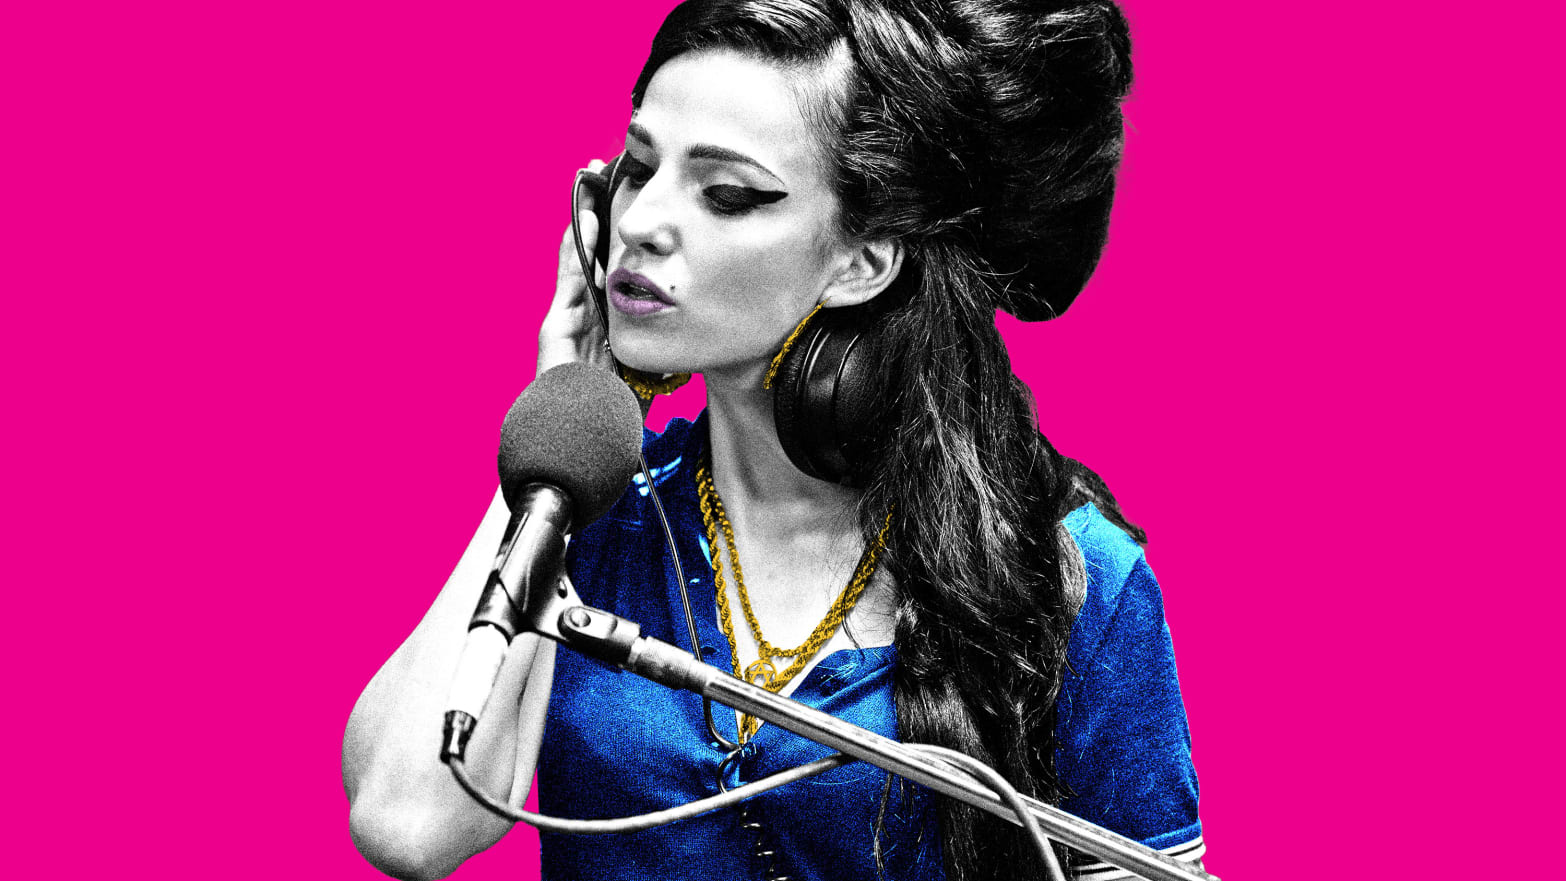 A photo illustration of Marisa Abela as Amy Winehouse